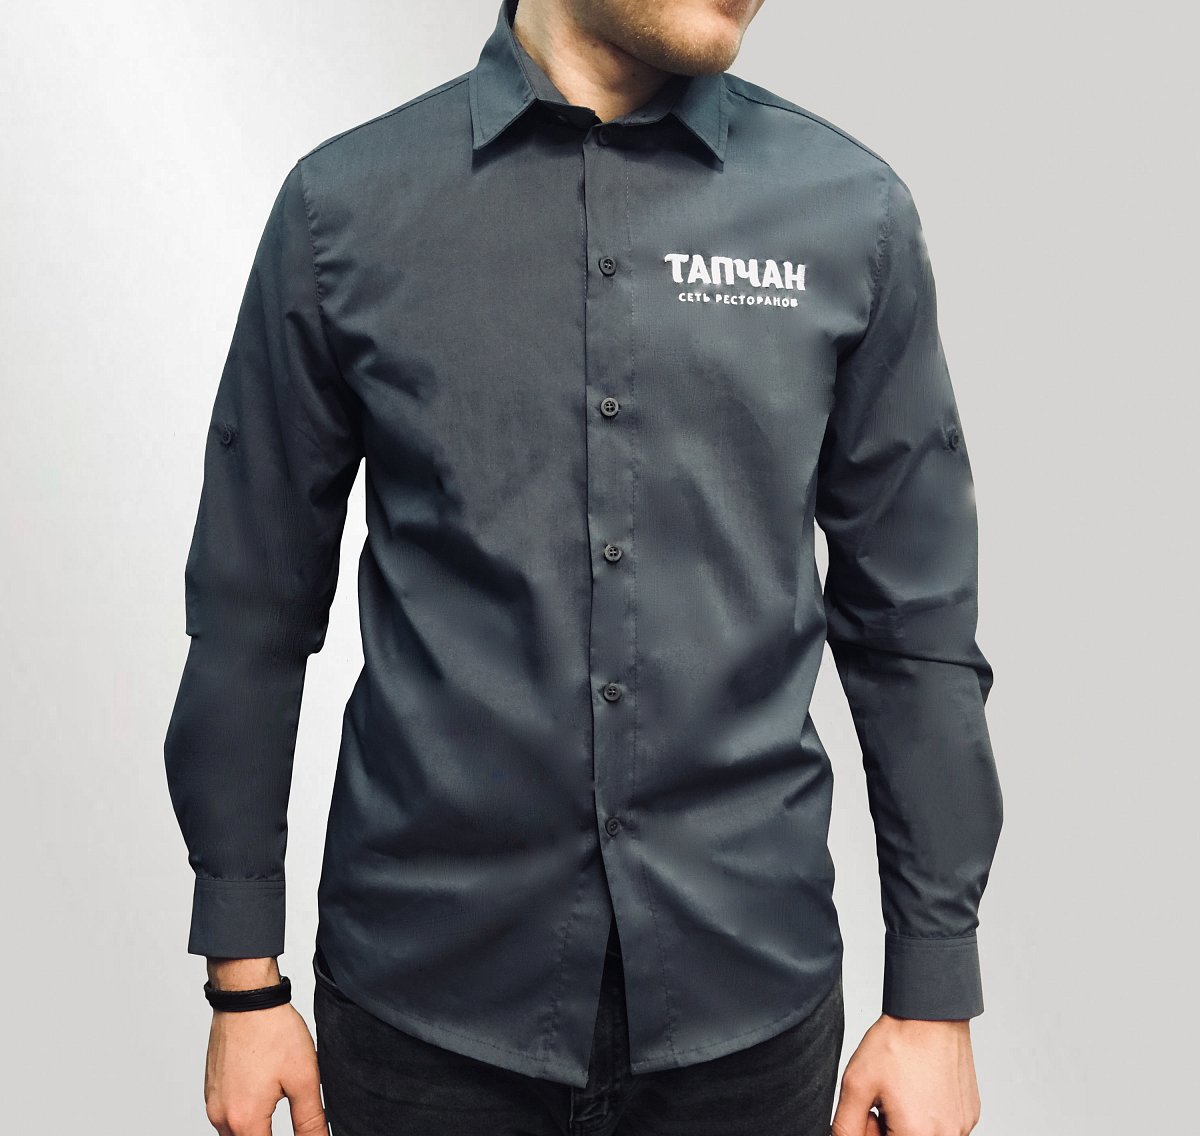 Пошив рубашек - пример модели мужская рубашка с брендированием